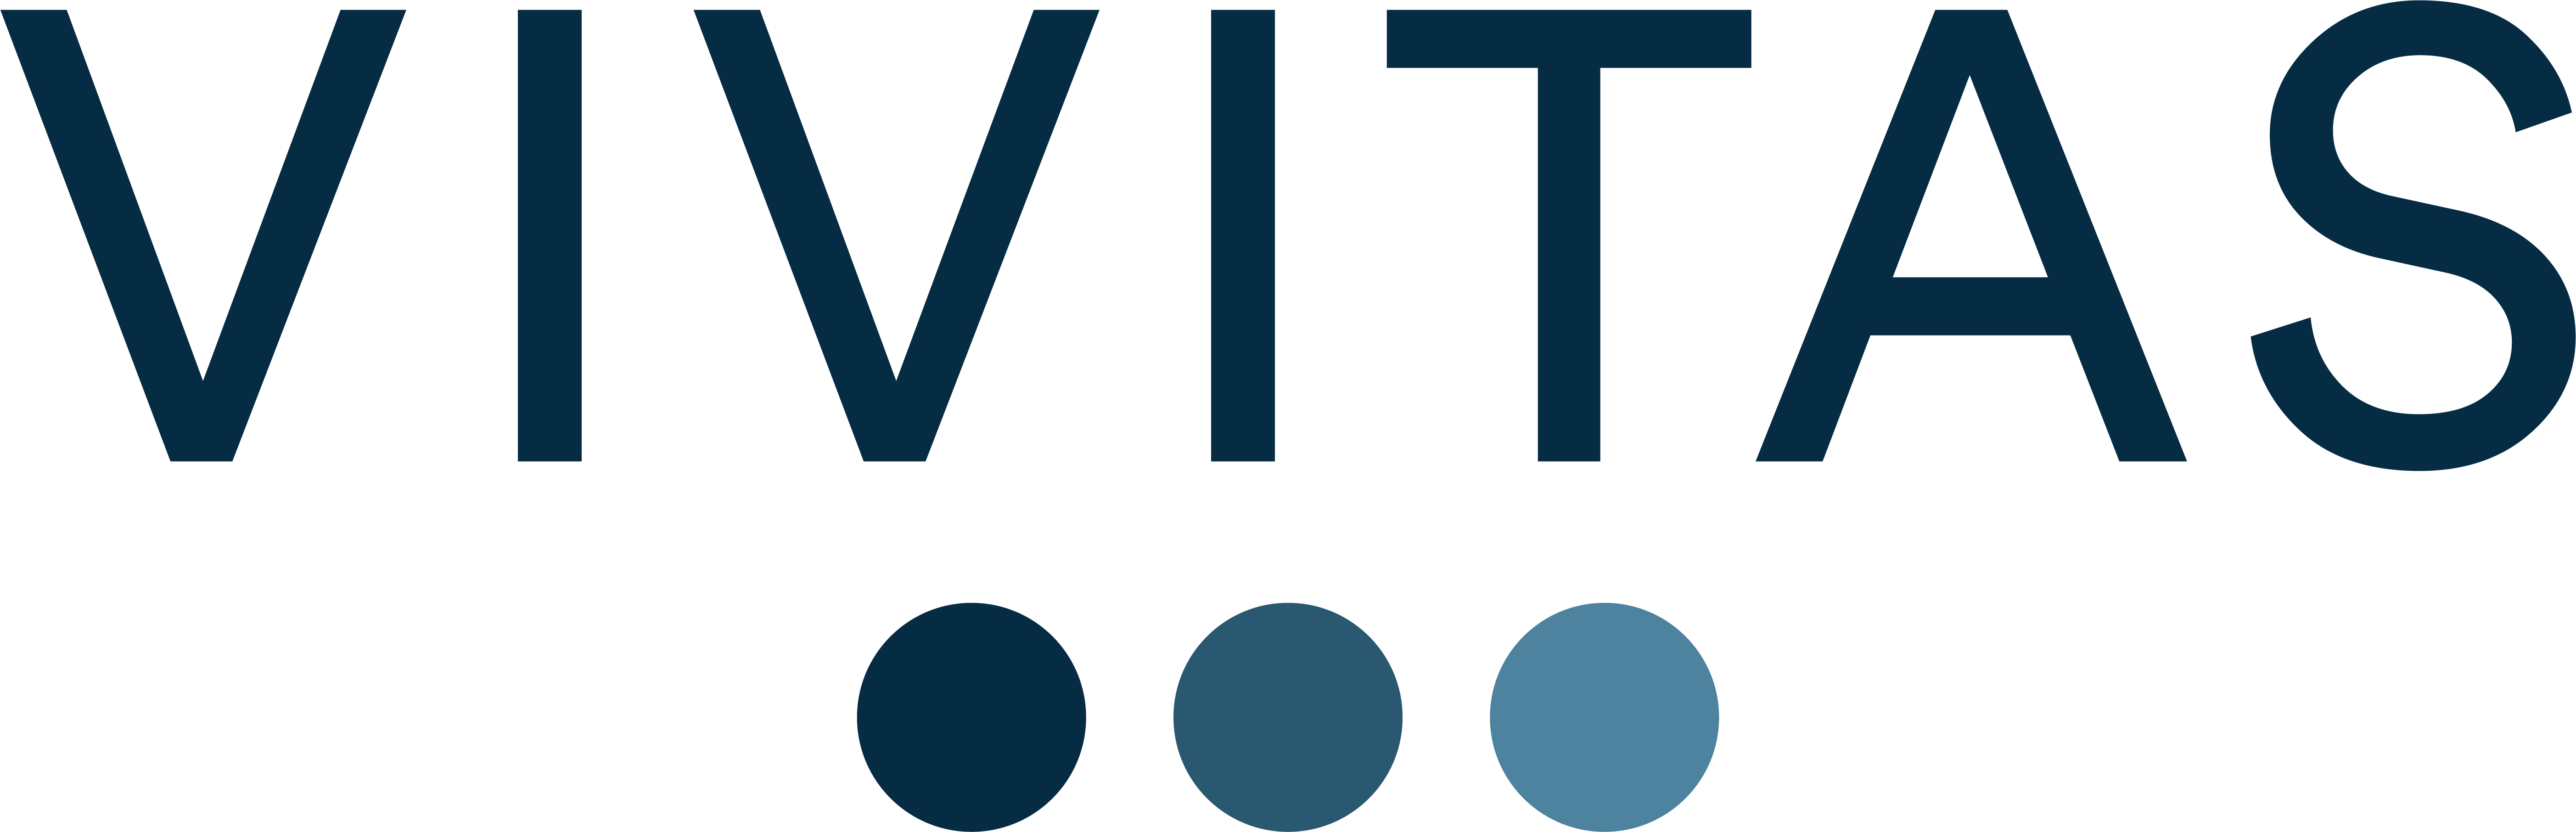 Vivitas-logo